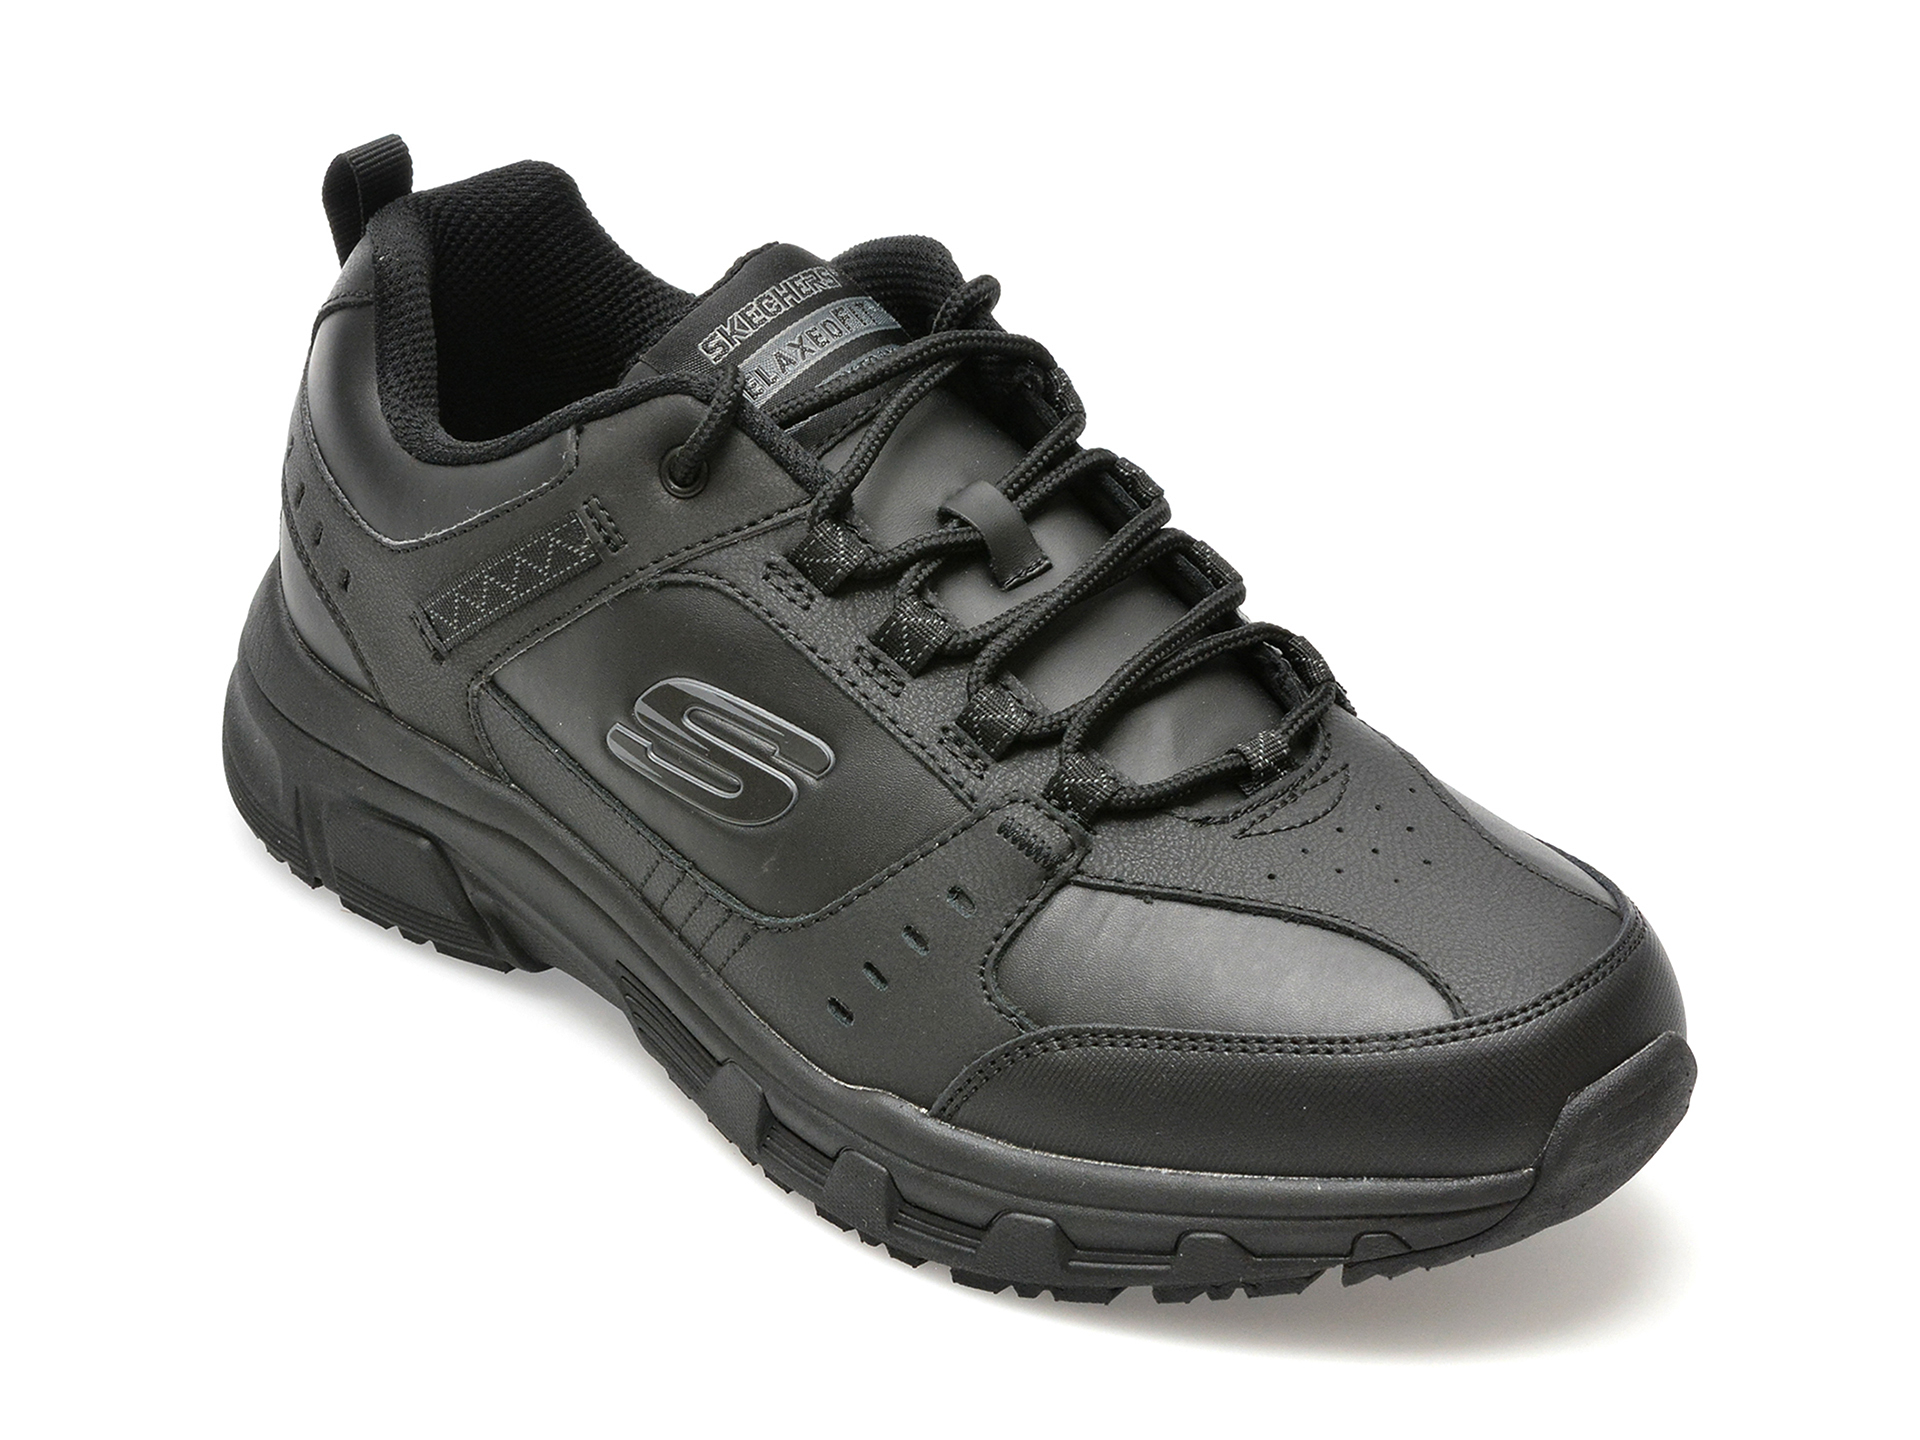 Poze Pantofi SKECHERS negri, OAK CANYON-REDWICK, din piele naturala